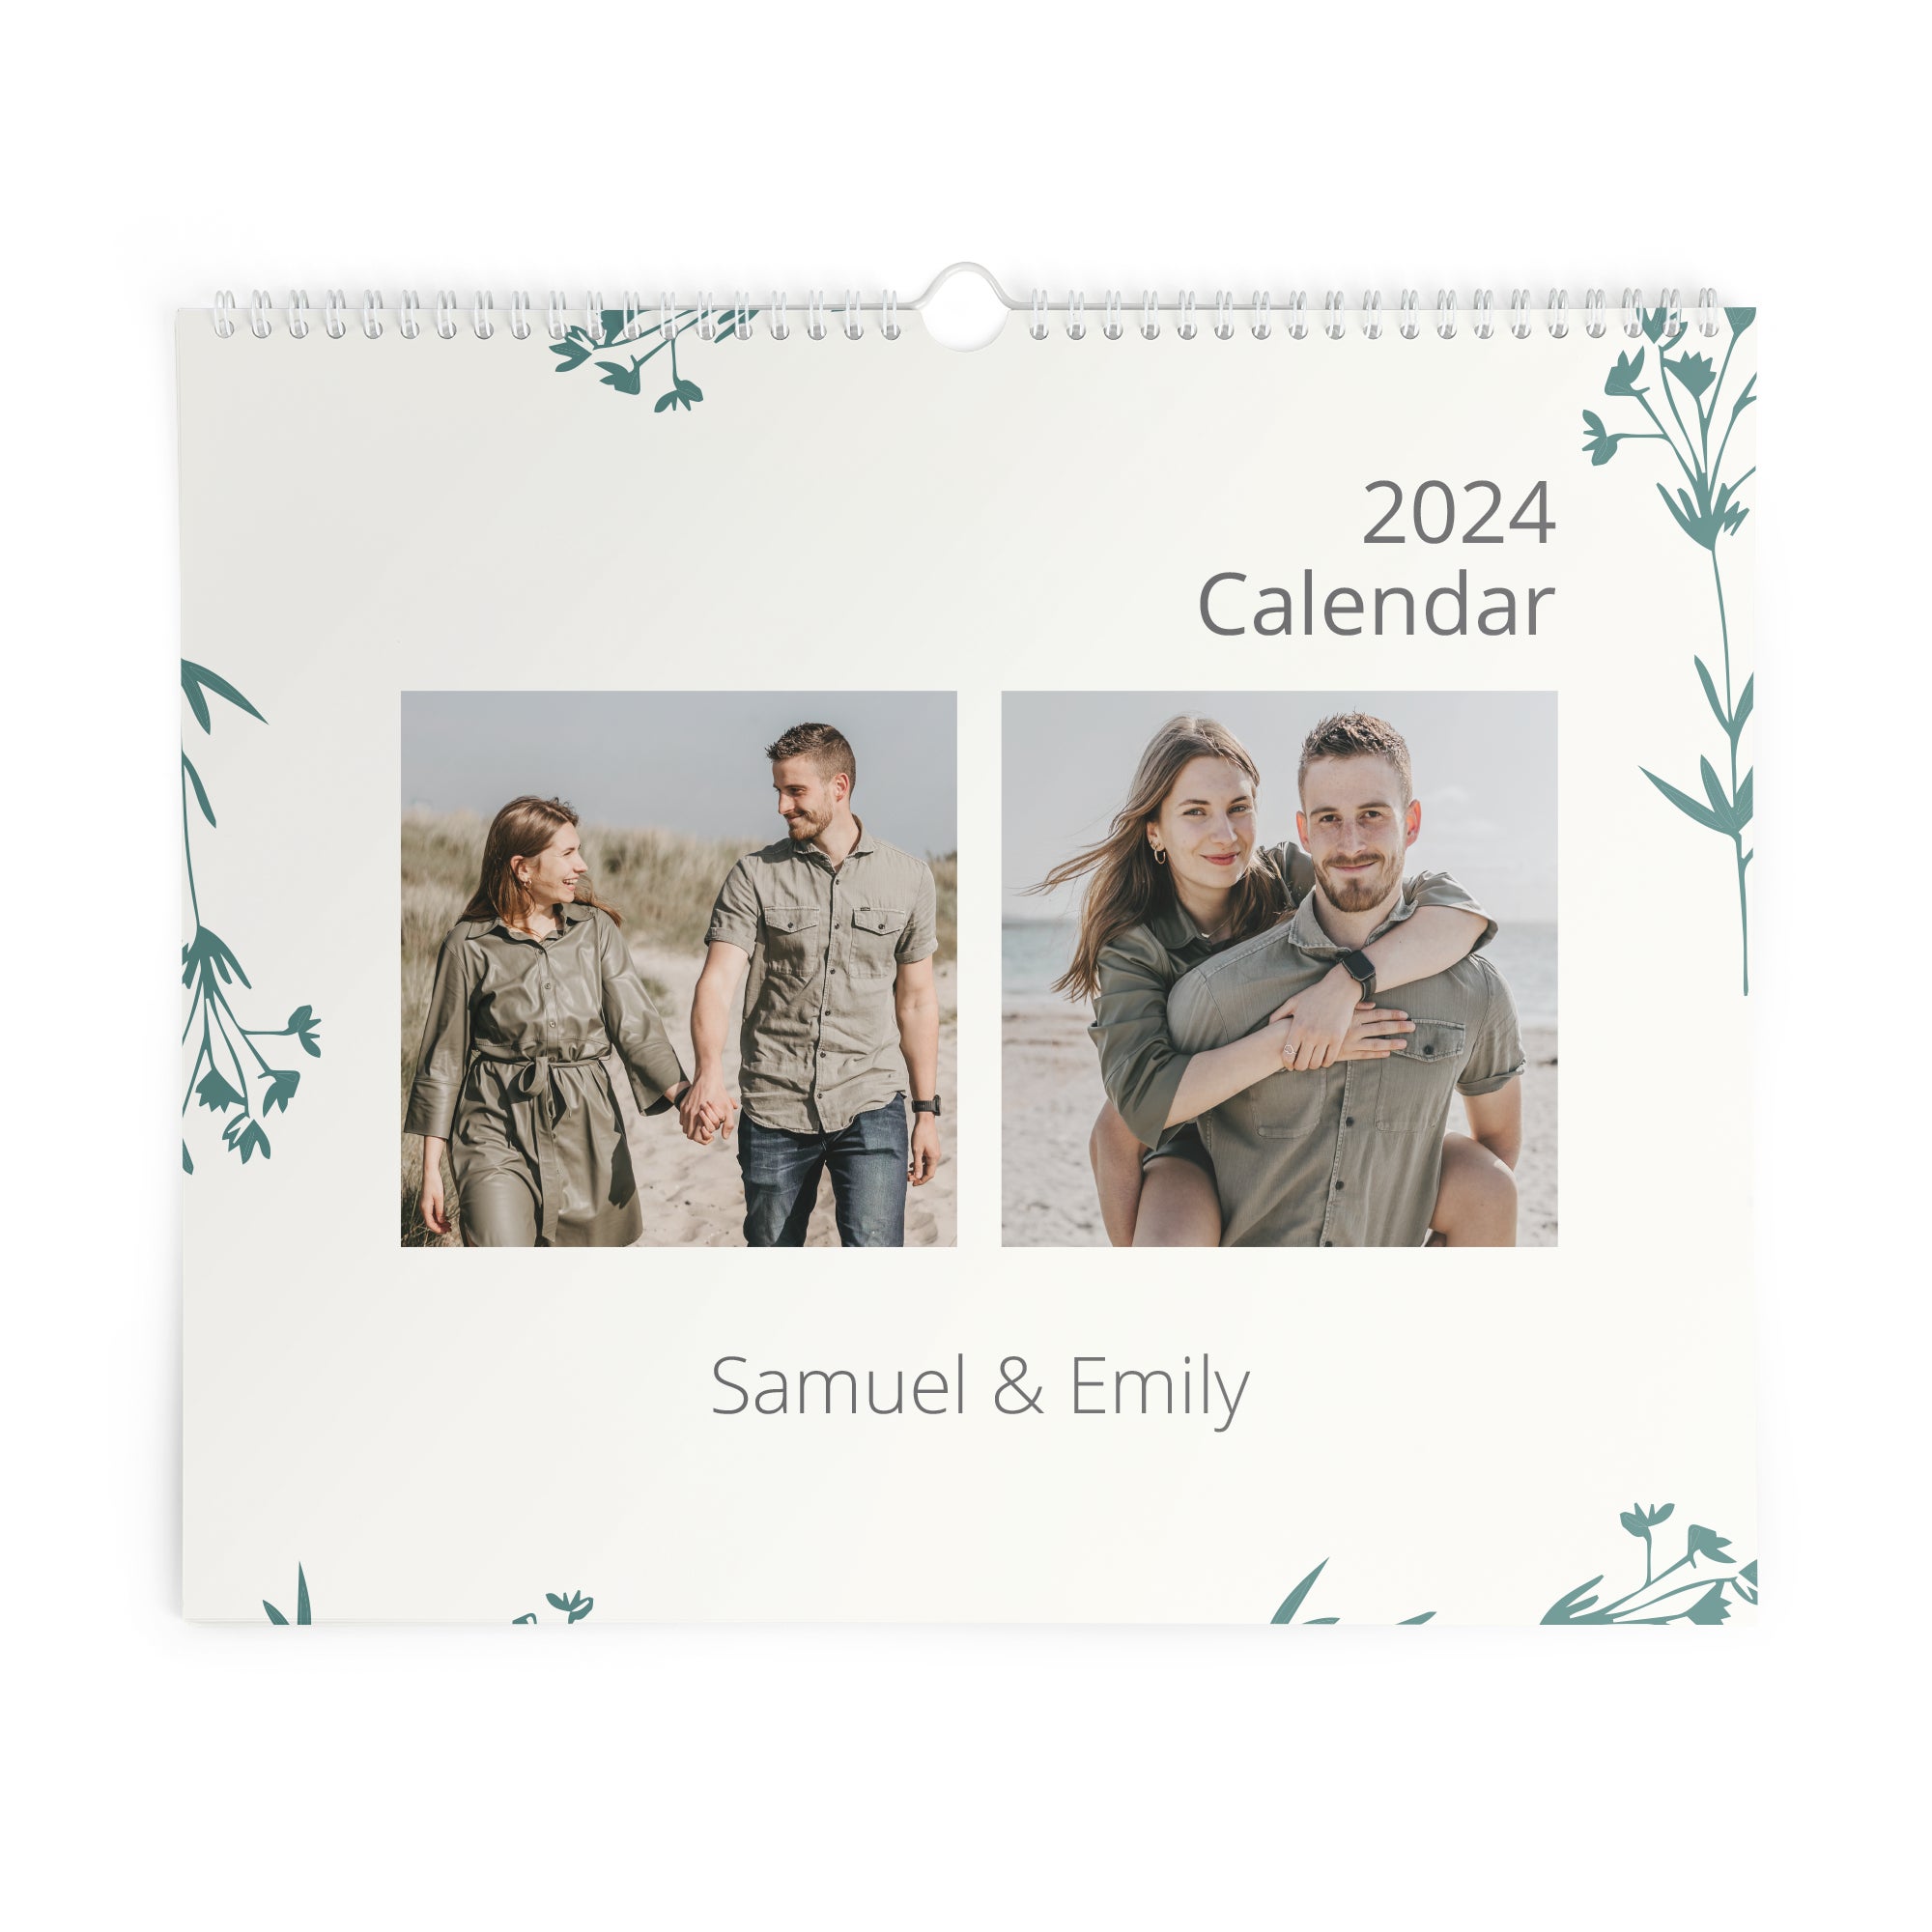 Printed Calendar for 2024 - Horizontal